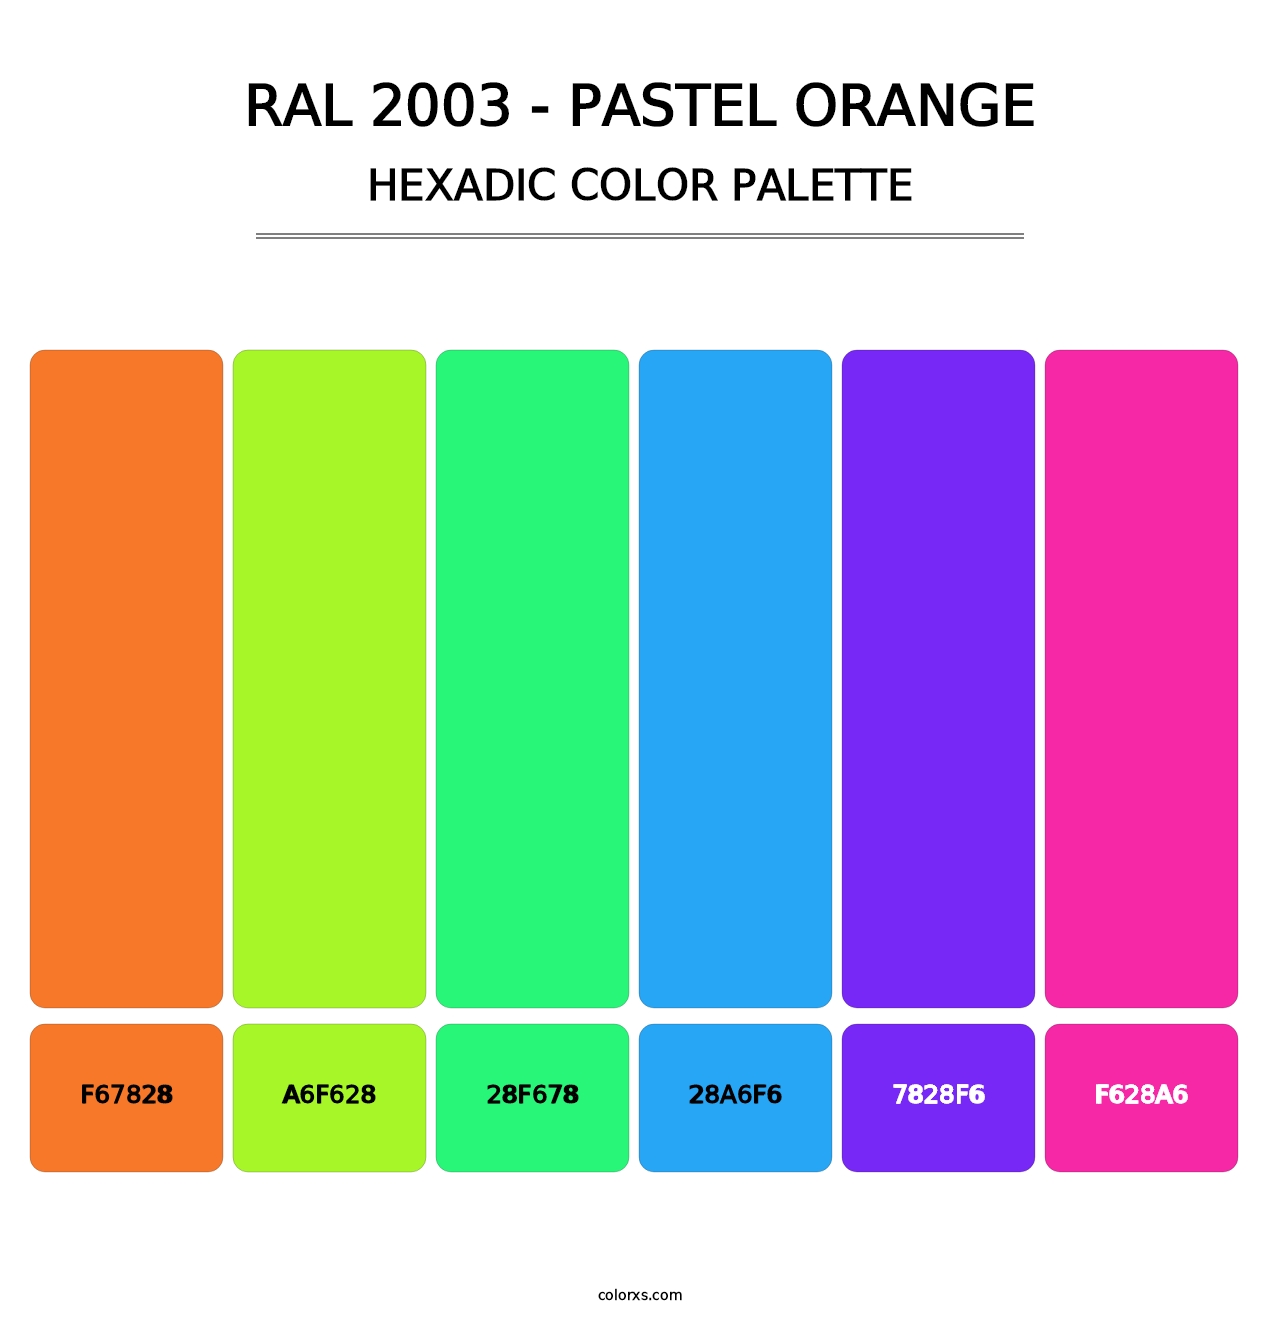 RAL 2003 - Pastel Orange - Hexadic Color Palette